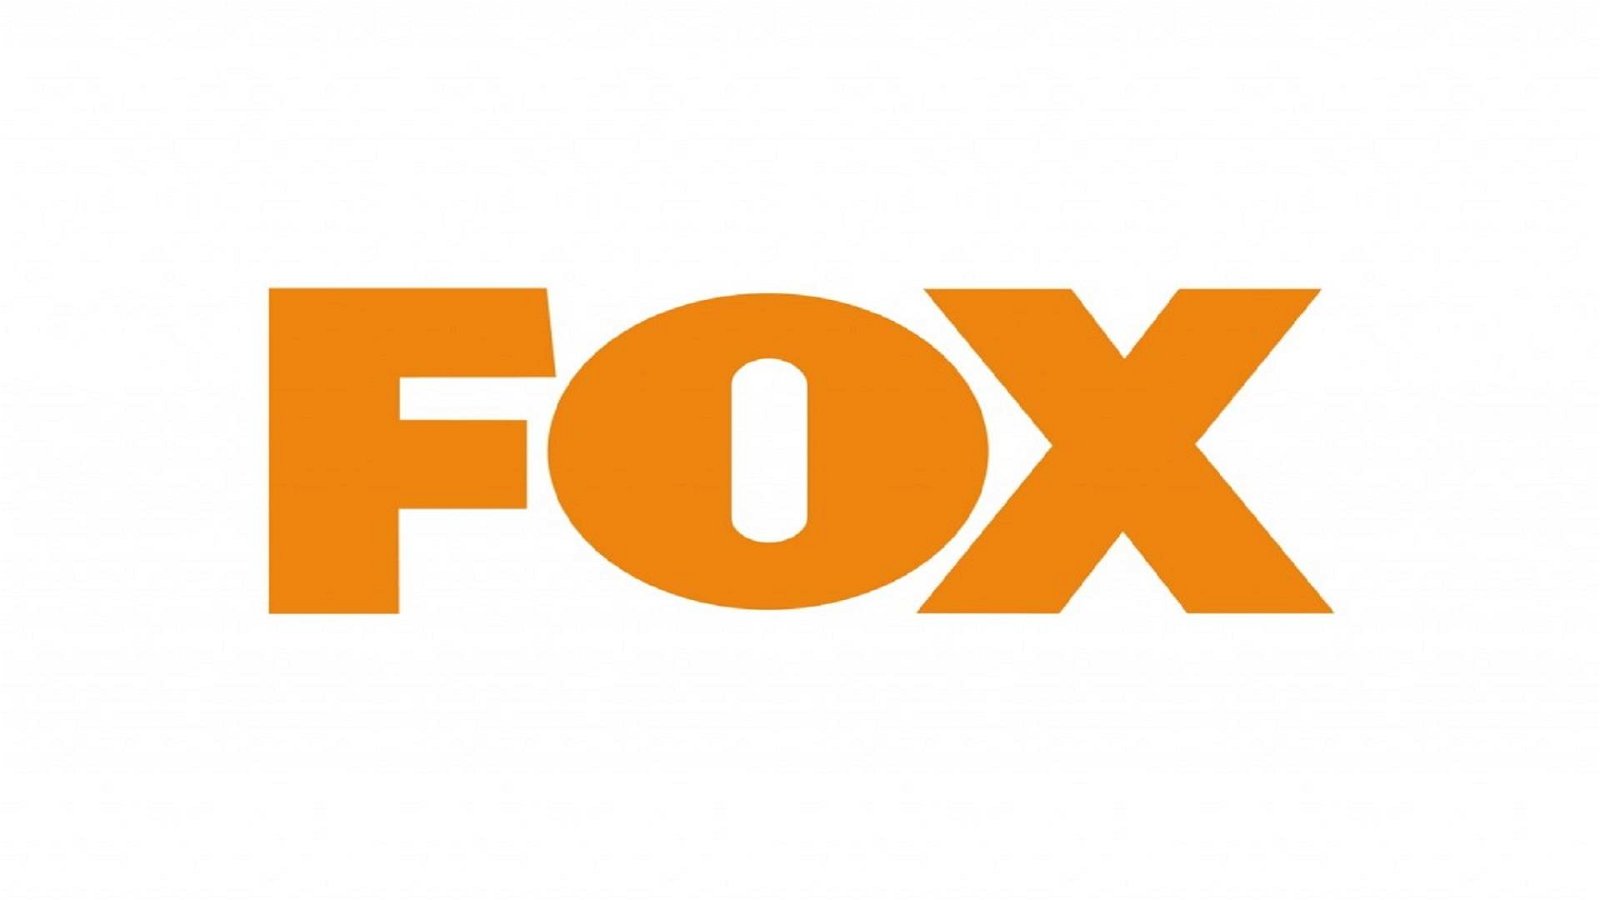 Immagine di FOX - gli highlights di giugno 2020 dei canali